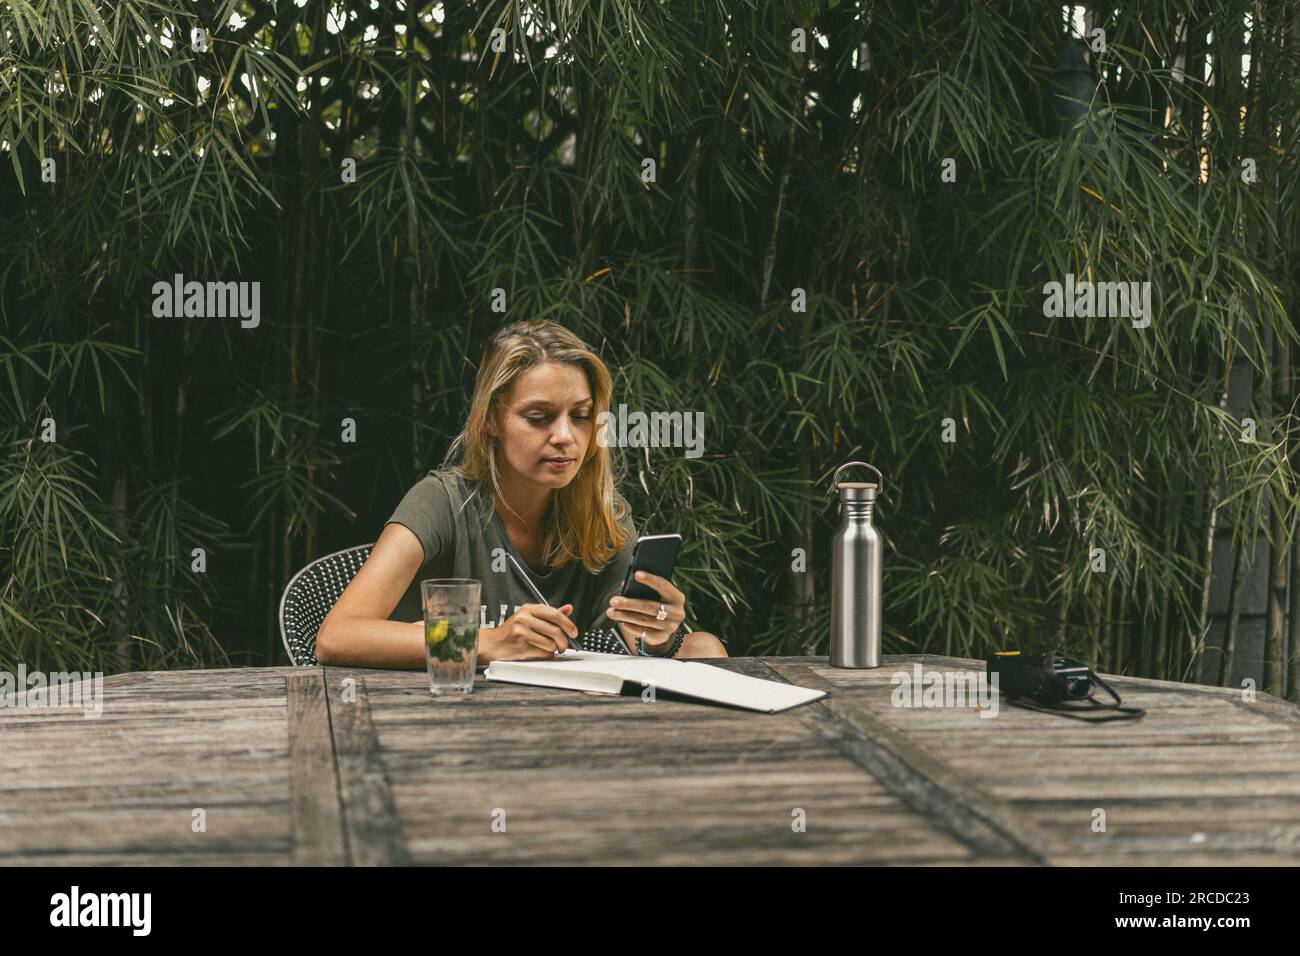 Una giovane donna scrive piani, fa un selfie, lavora come blogger. Foto Stock